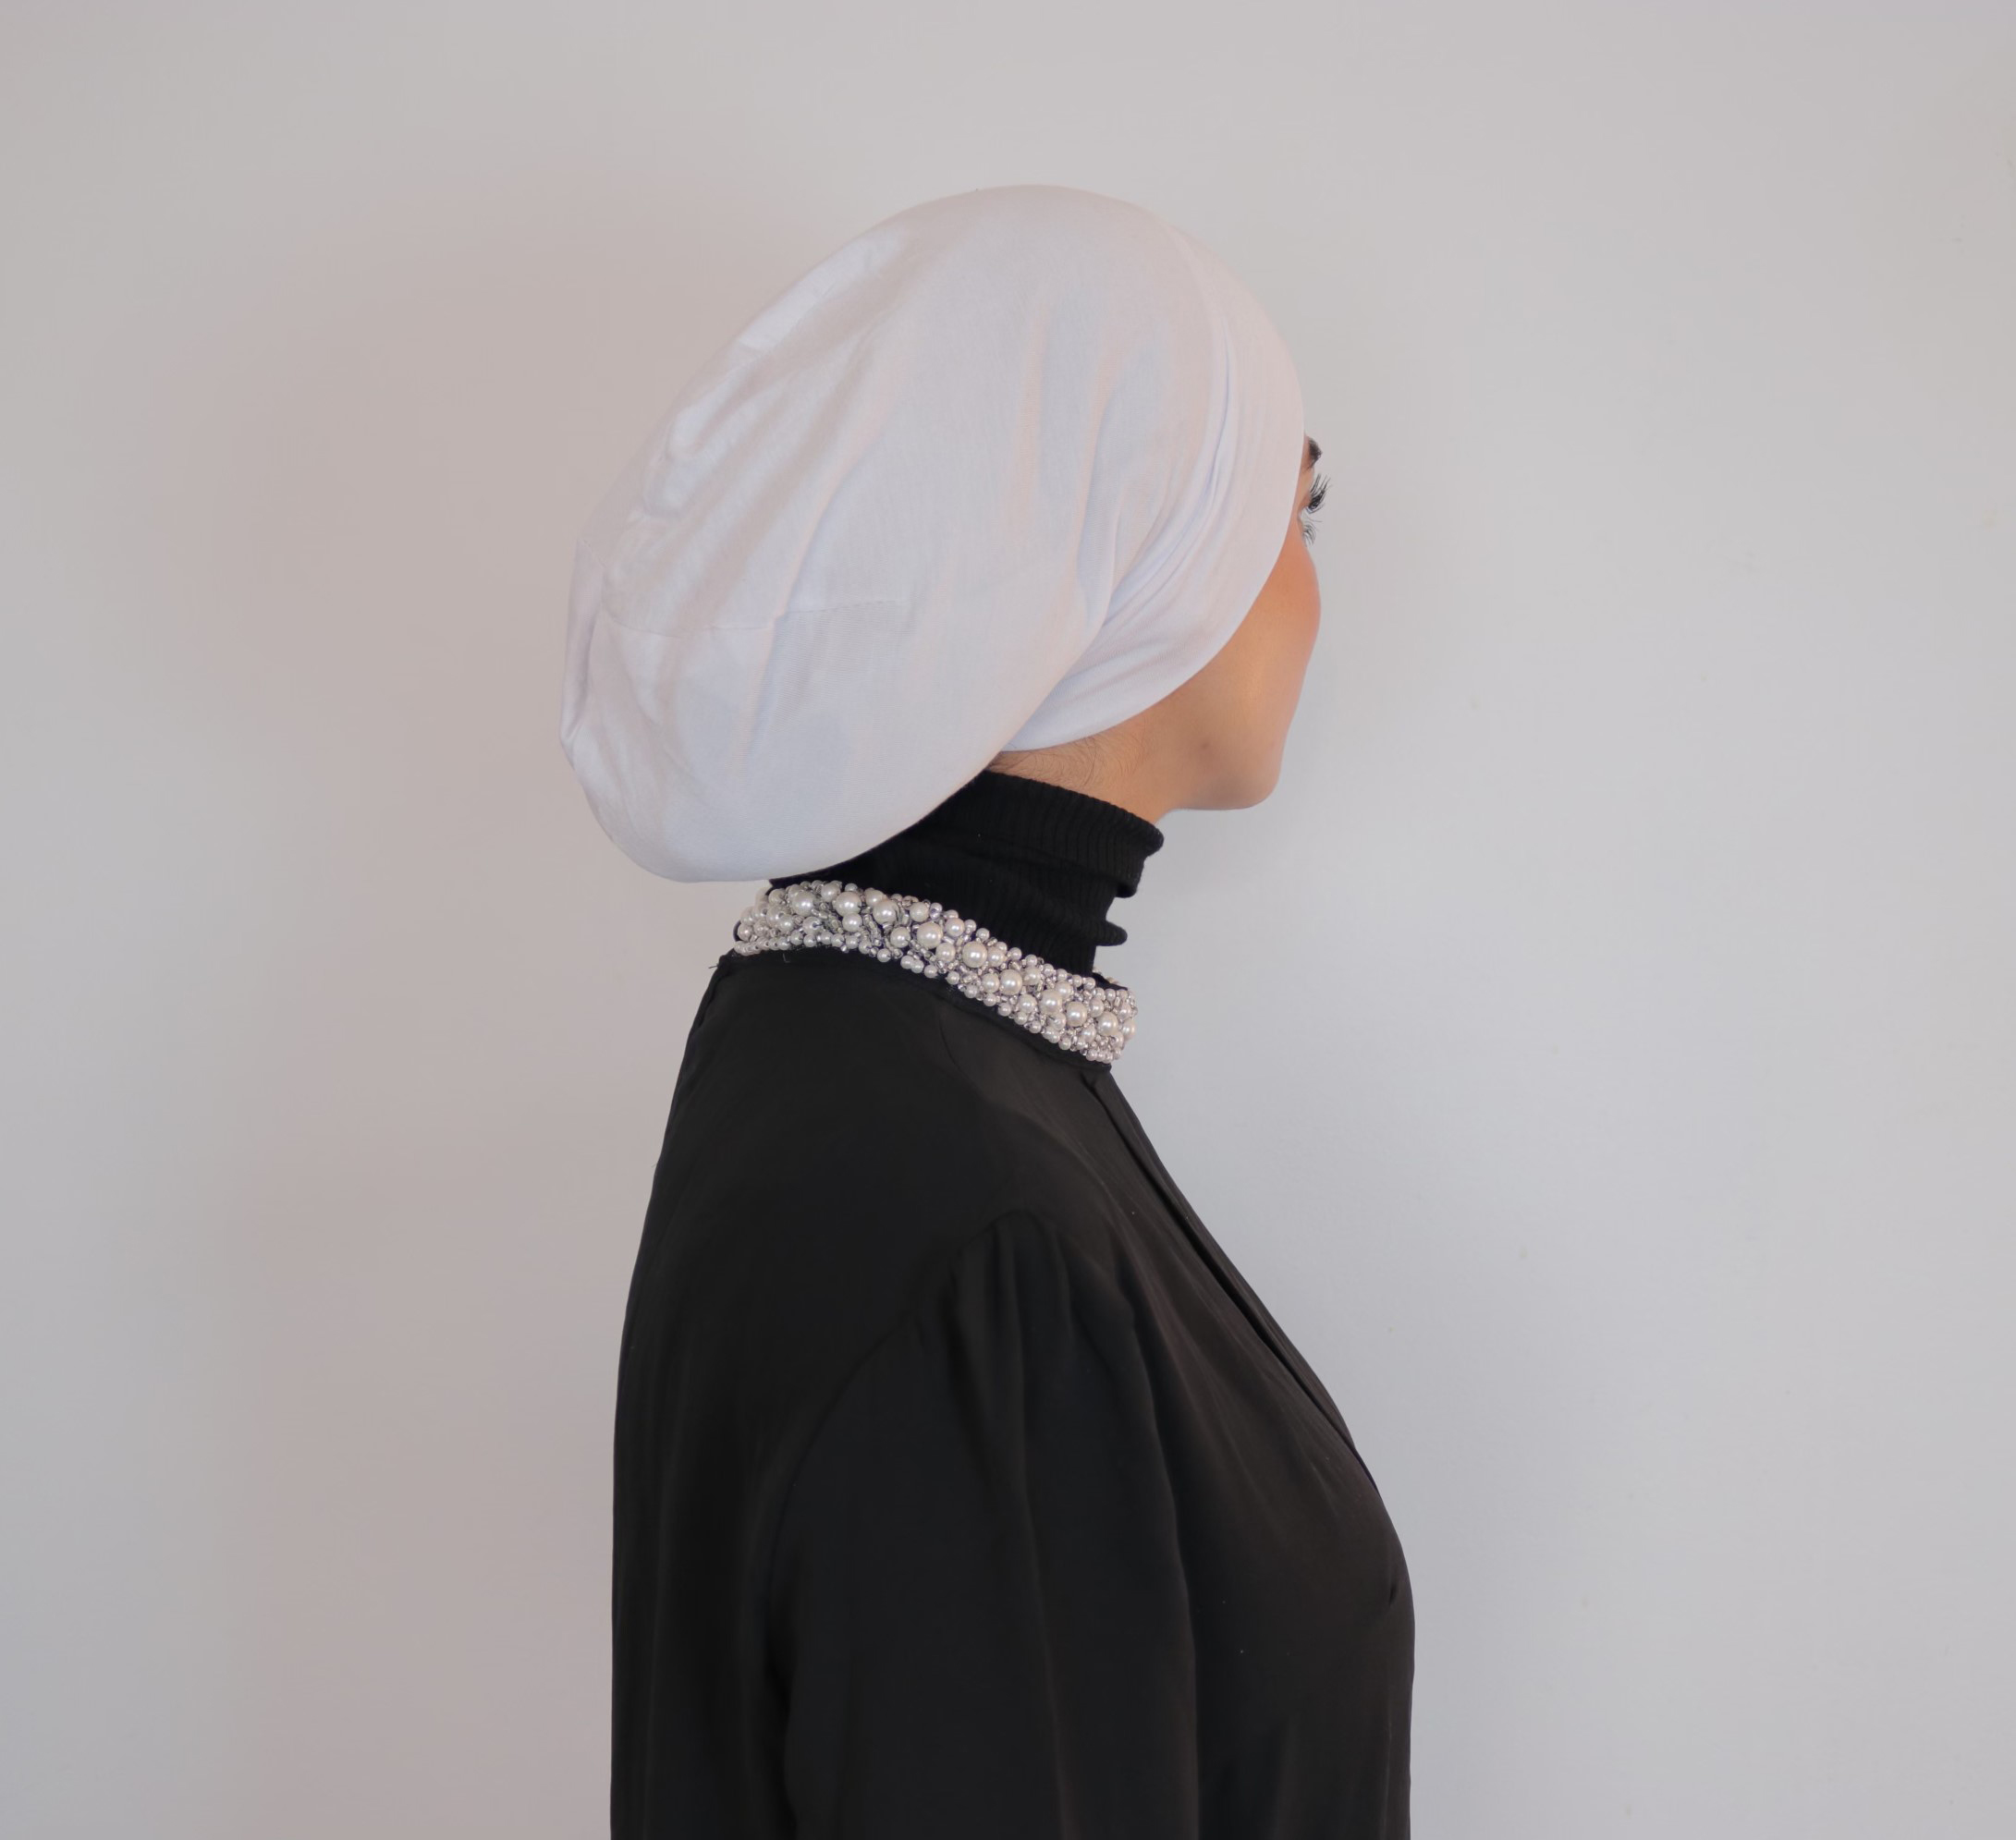 Premium Hijab Undercap - Butter